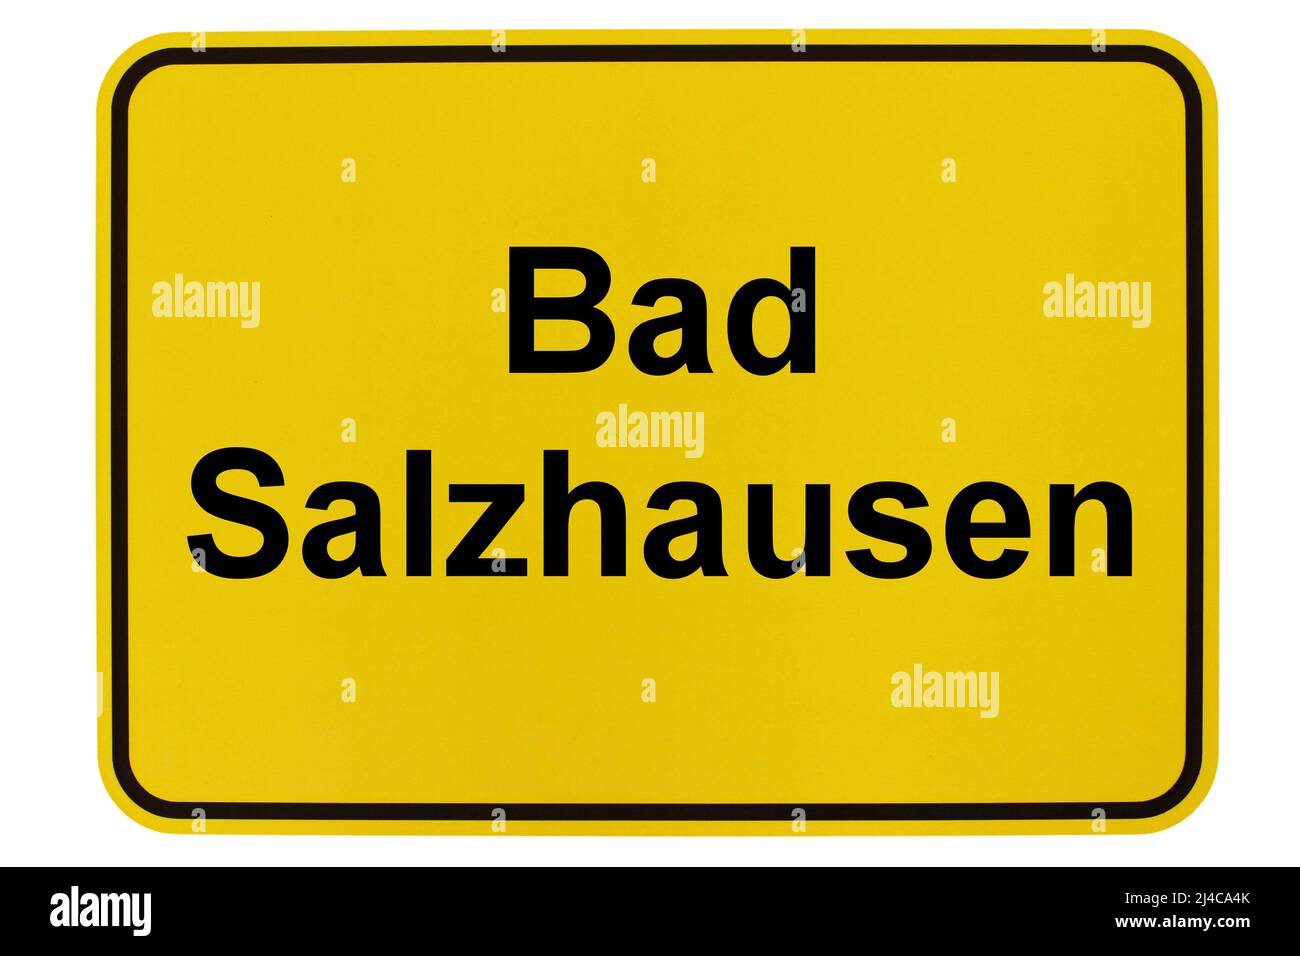 Impressionen aus Bad Salzhausen, einem Stadtteil von Nidda in Hessen Stock Photo